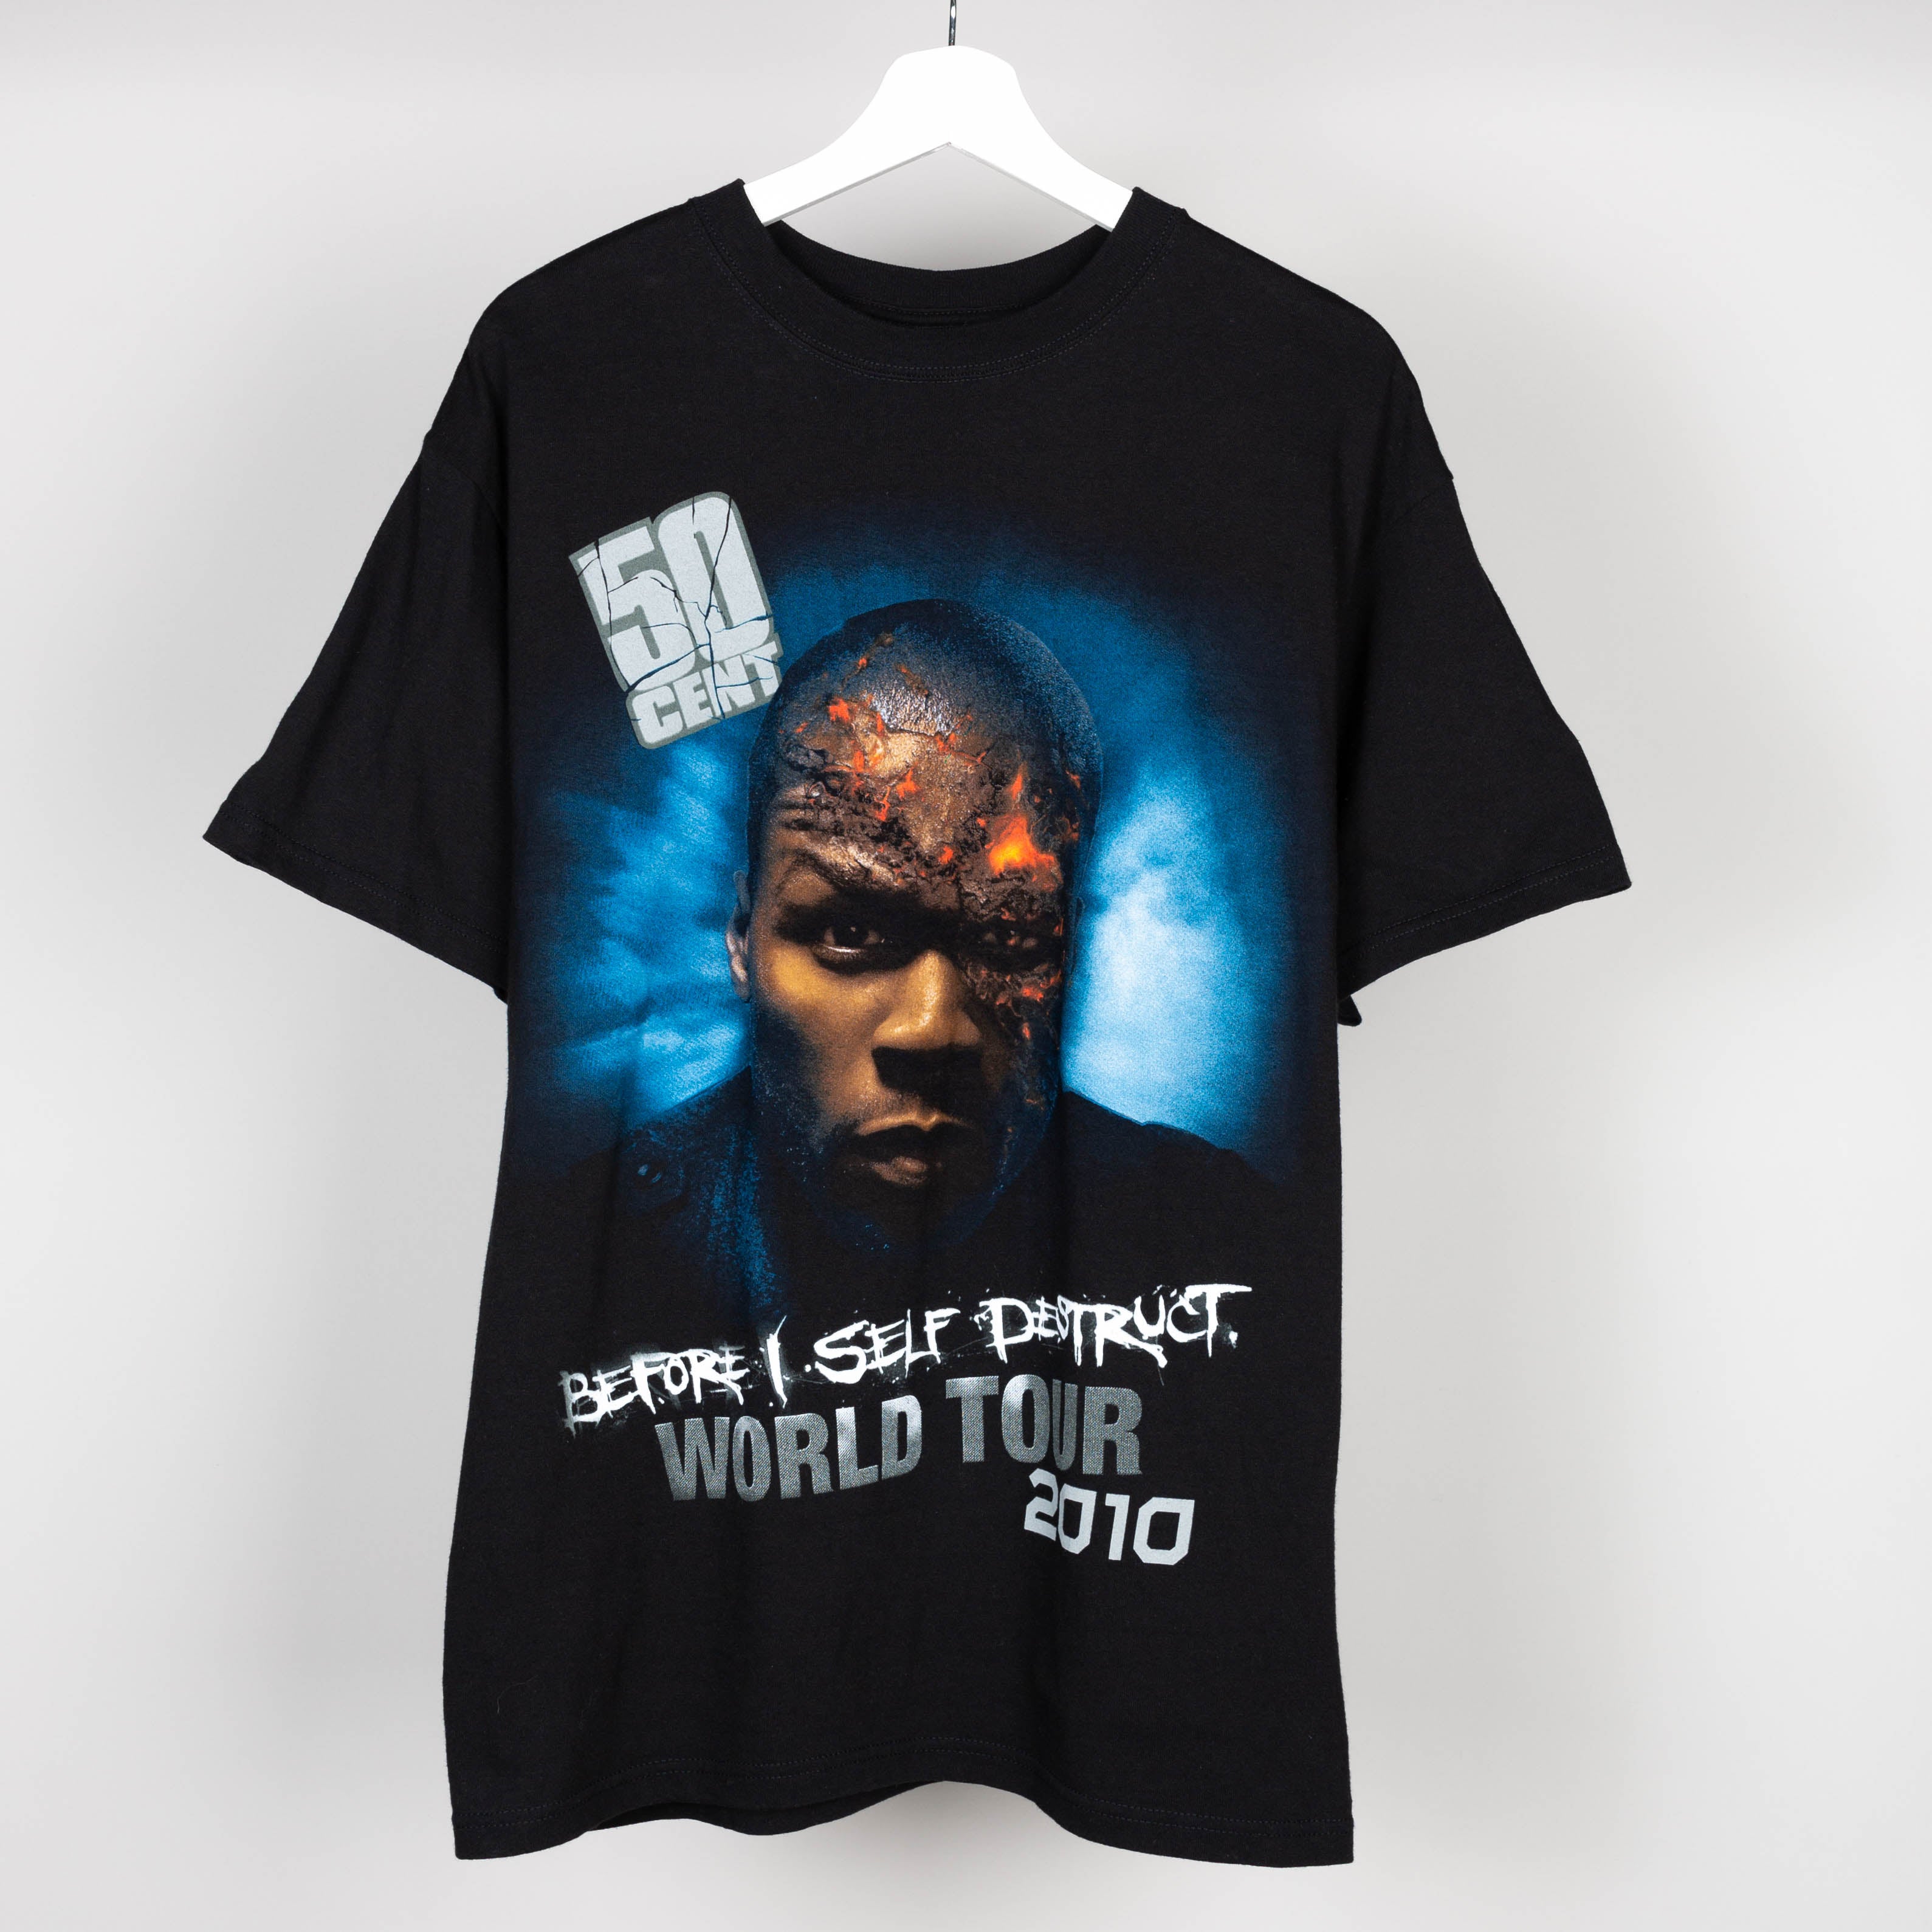 2010 50 Cent World Tour T-Shirt Size L